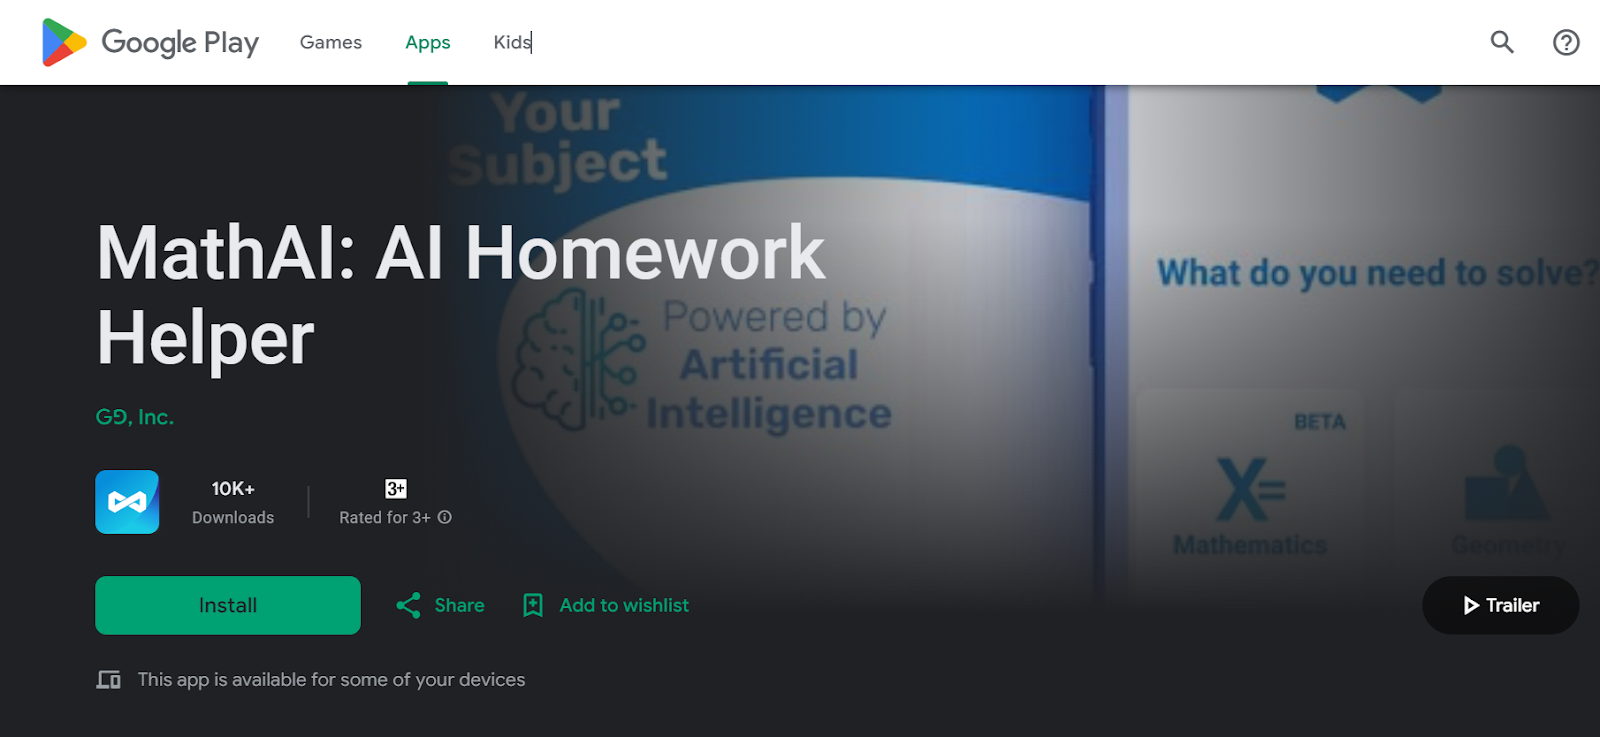 15. MathAI: AI Homework Helper